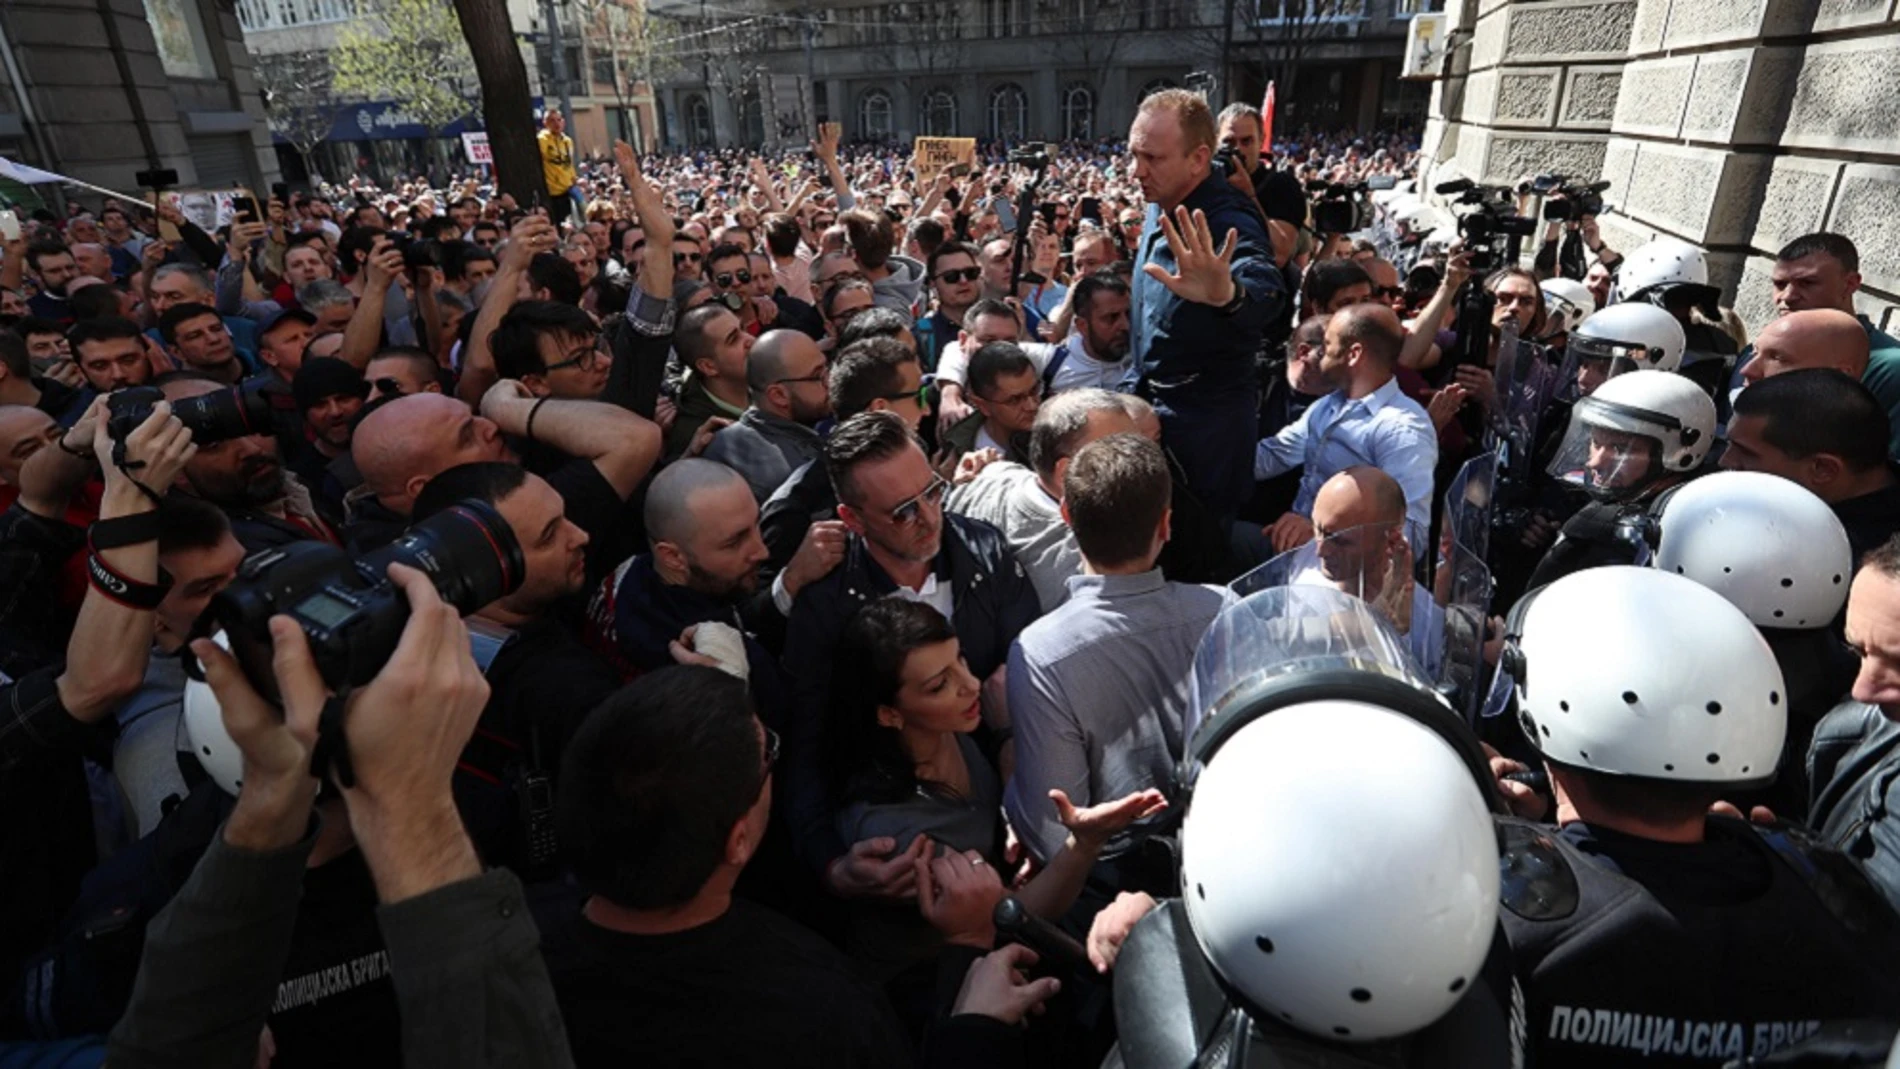 Miles de personas se concentran ante la sede de la Presidencia serbia para protestar contra el presidente